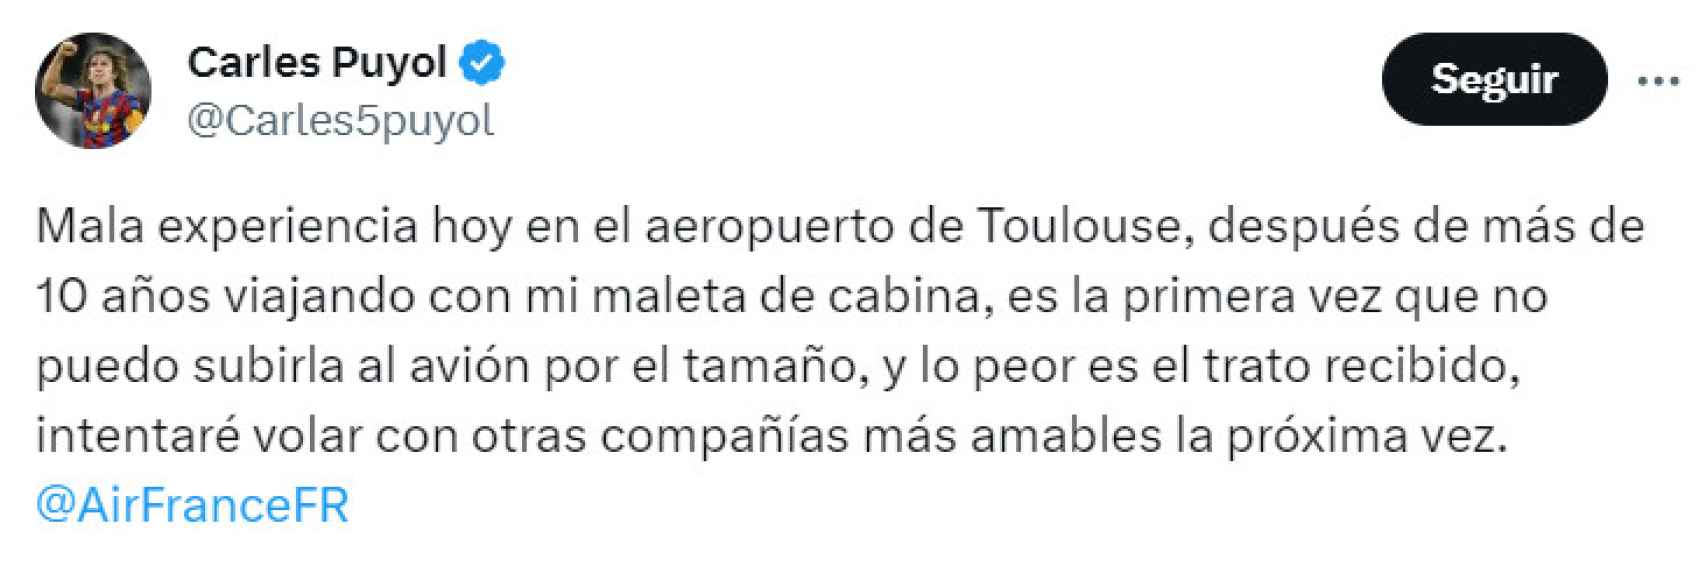 La rajada de Carles Puyol en X tras prohibirle una aerolínea viajar con su maleta de cabina